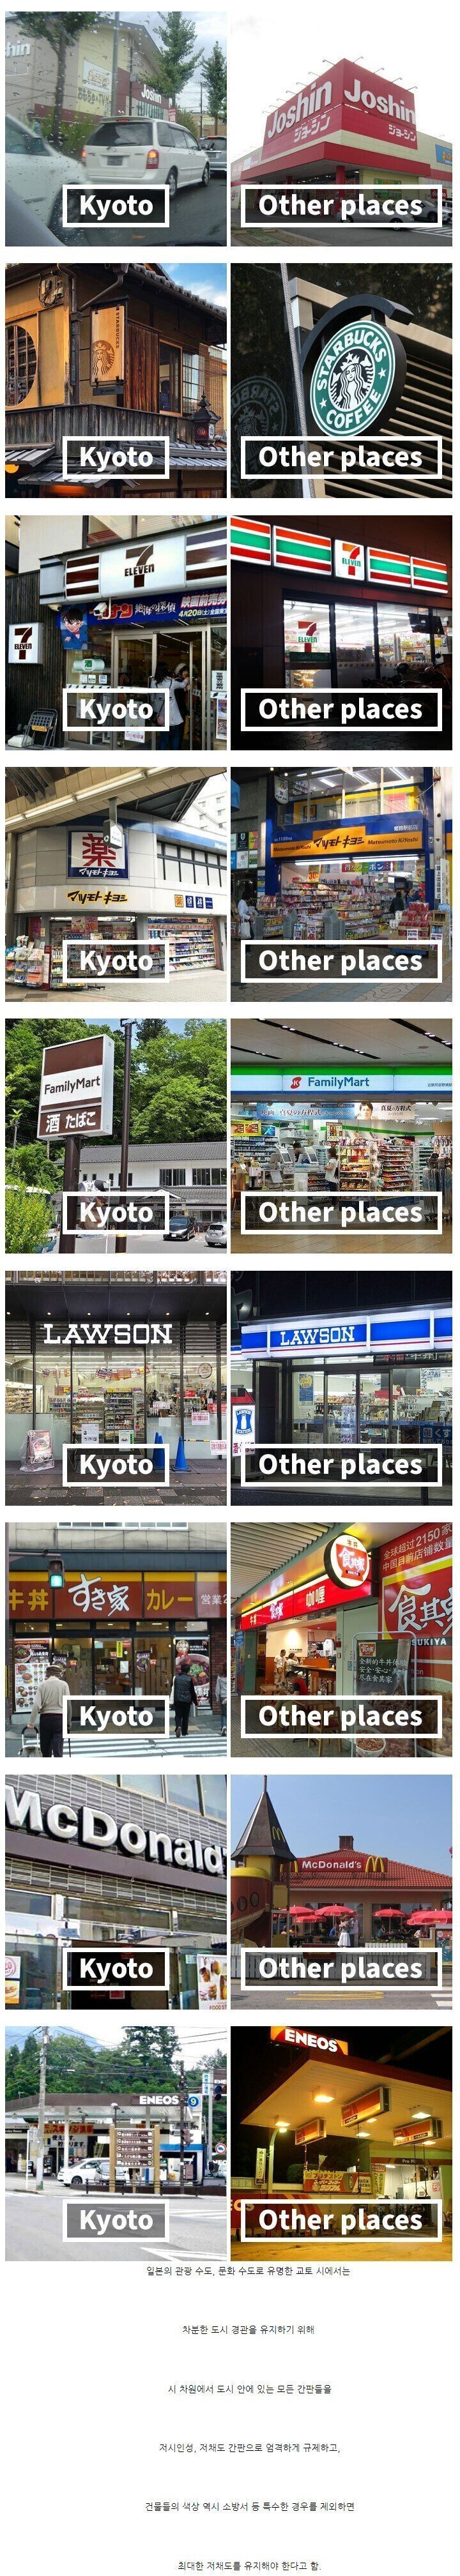 간판색도 규제하는 일본도시 jpg